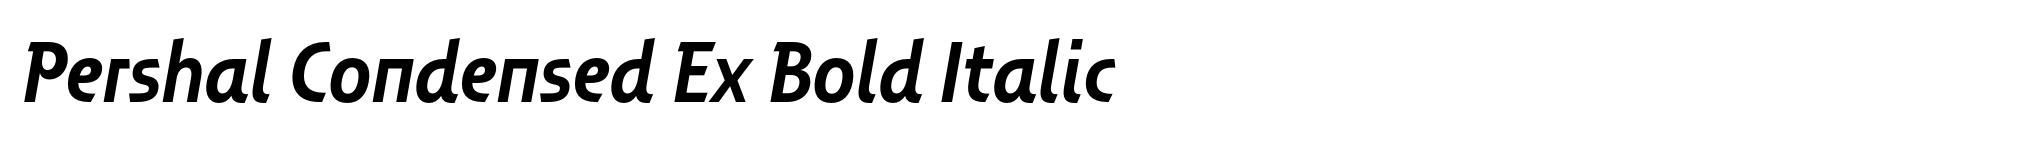 Pershal Condensed Ex Bold Italic image